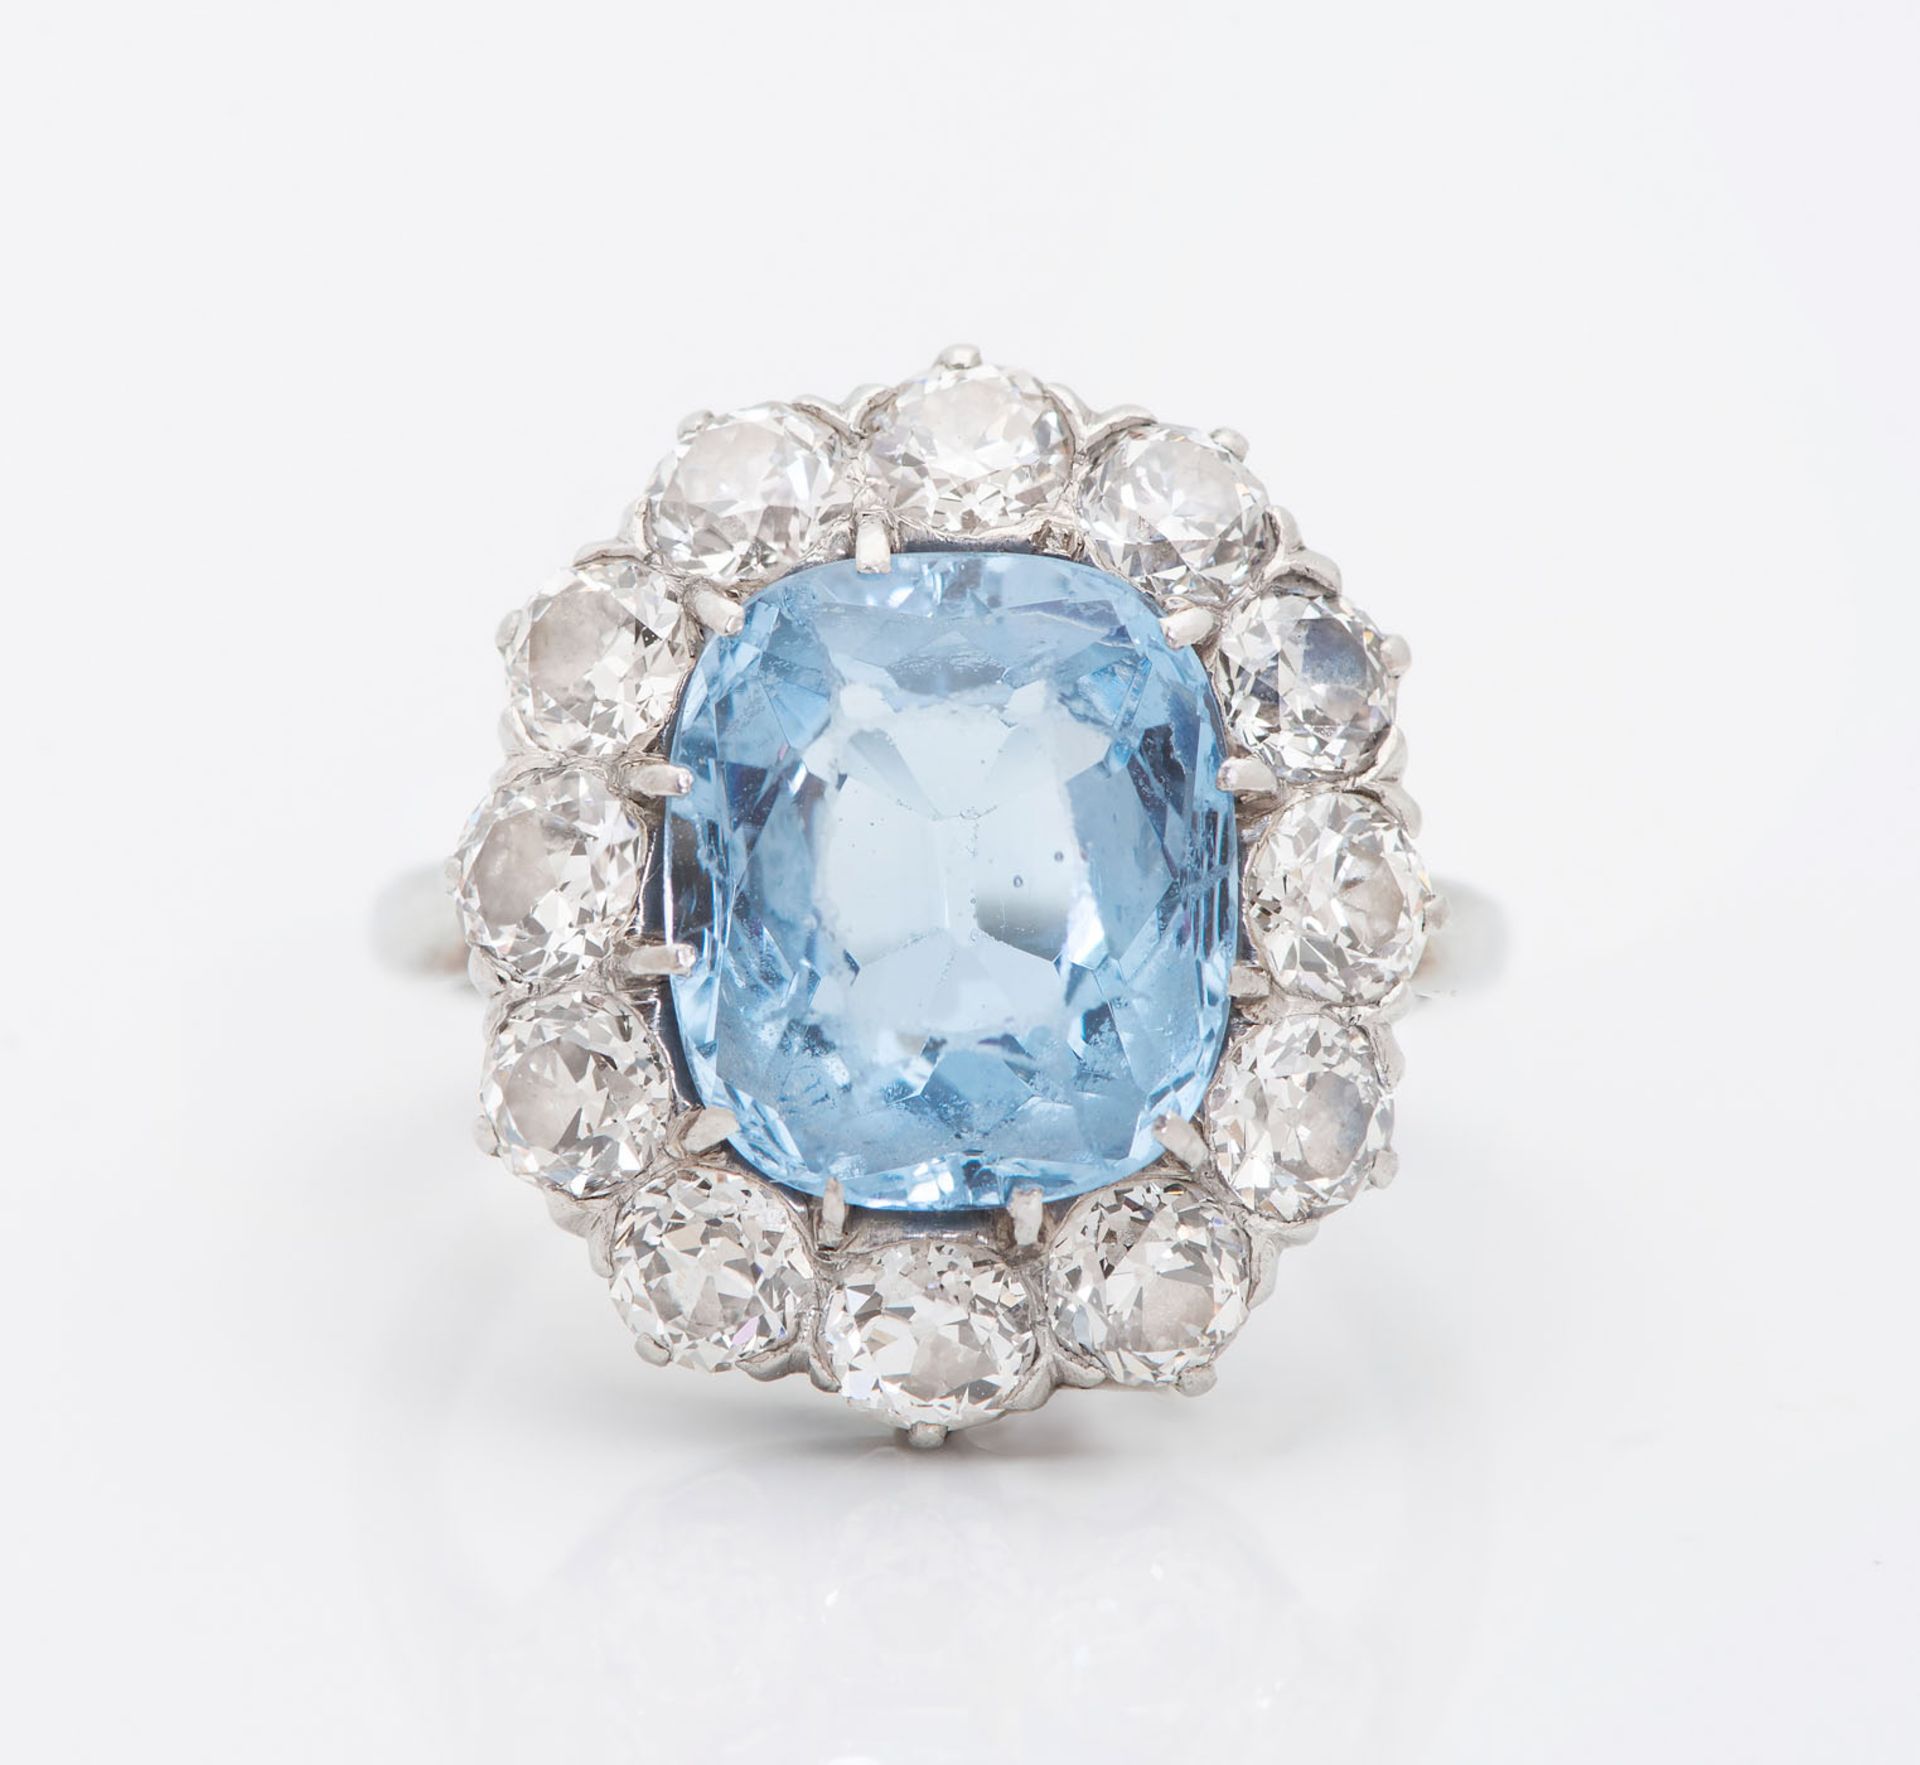 A Fine Edwardian 18K White Gold Diamond and Aquamarine Ring - Image 2 of 4